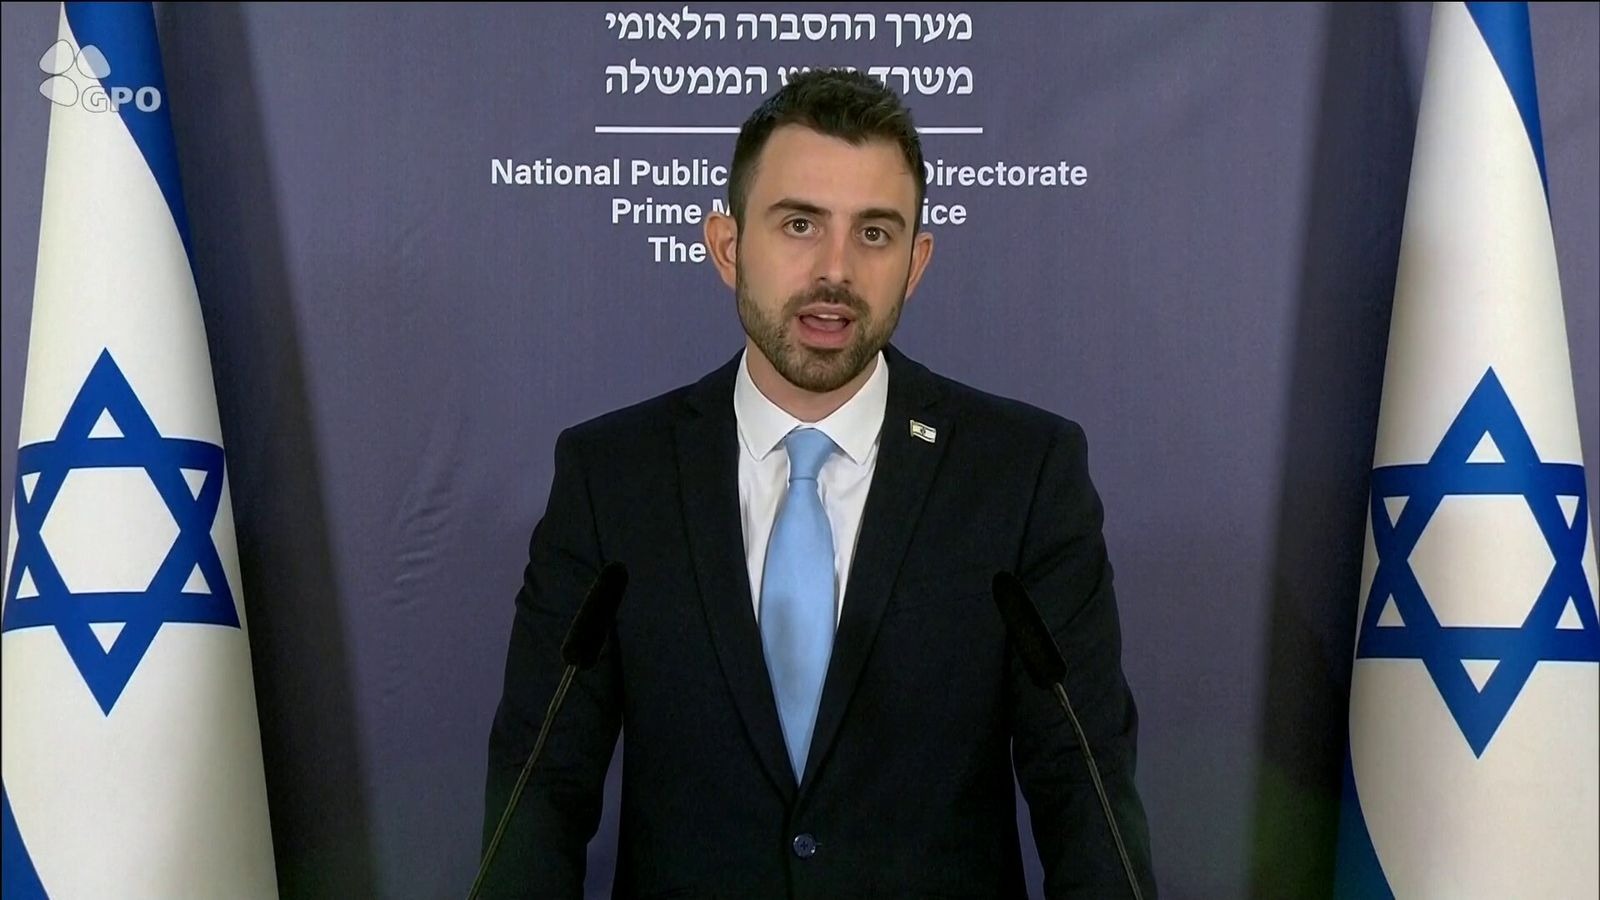 Sajtóhír: felfüggesztették a mindenki által kedvelt izraeli kormányszóvivőt – Neokohn